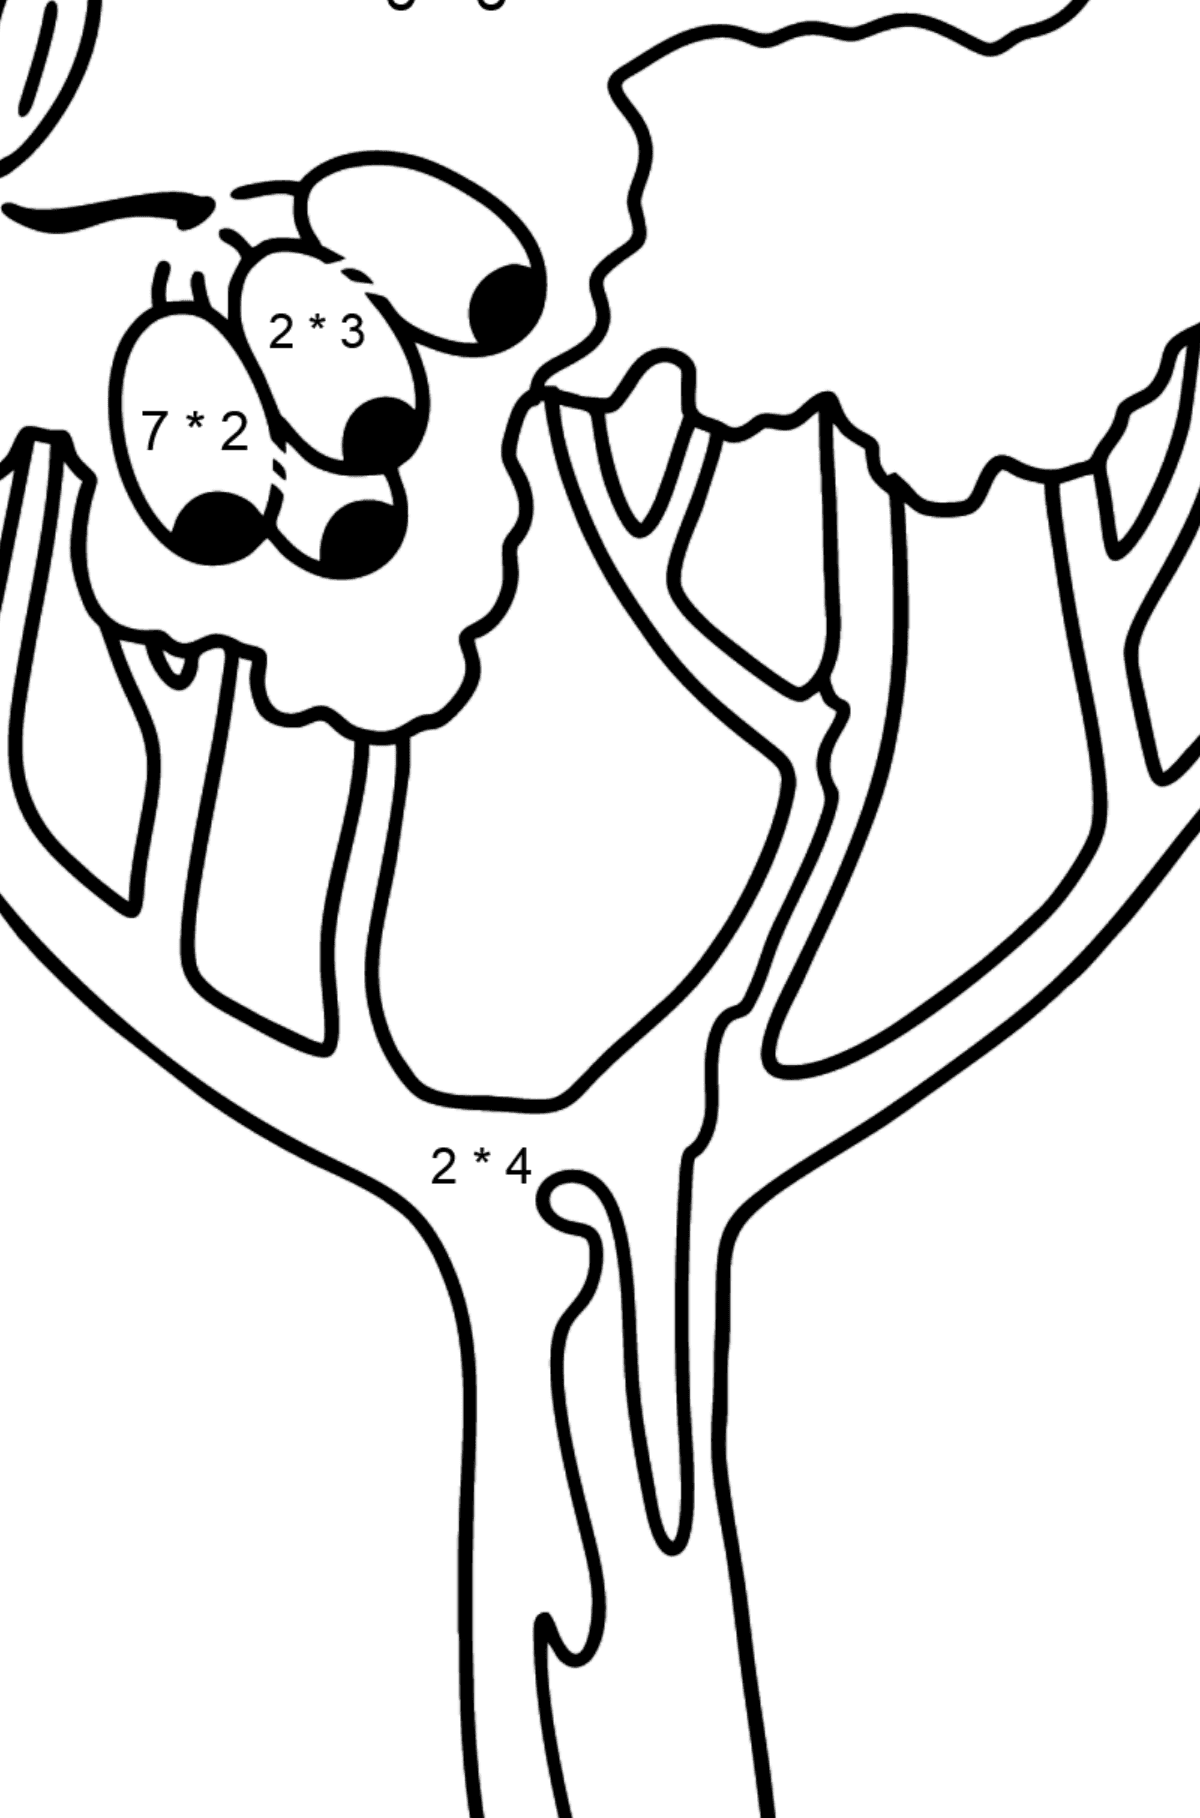 Mewarnai gambar pohon karet - Corimbia - Pewarnaan Matematika: Penjumlahan untuk anak-anak